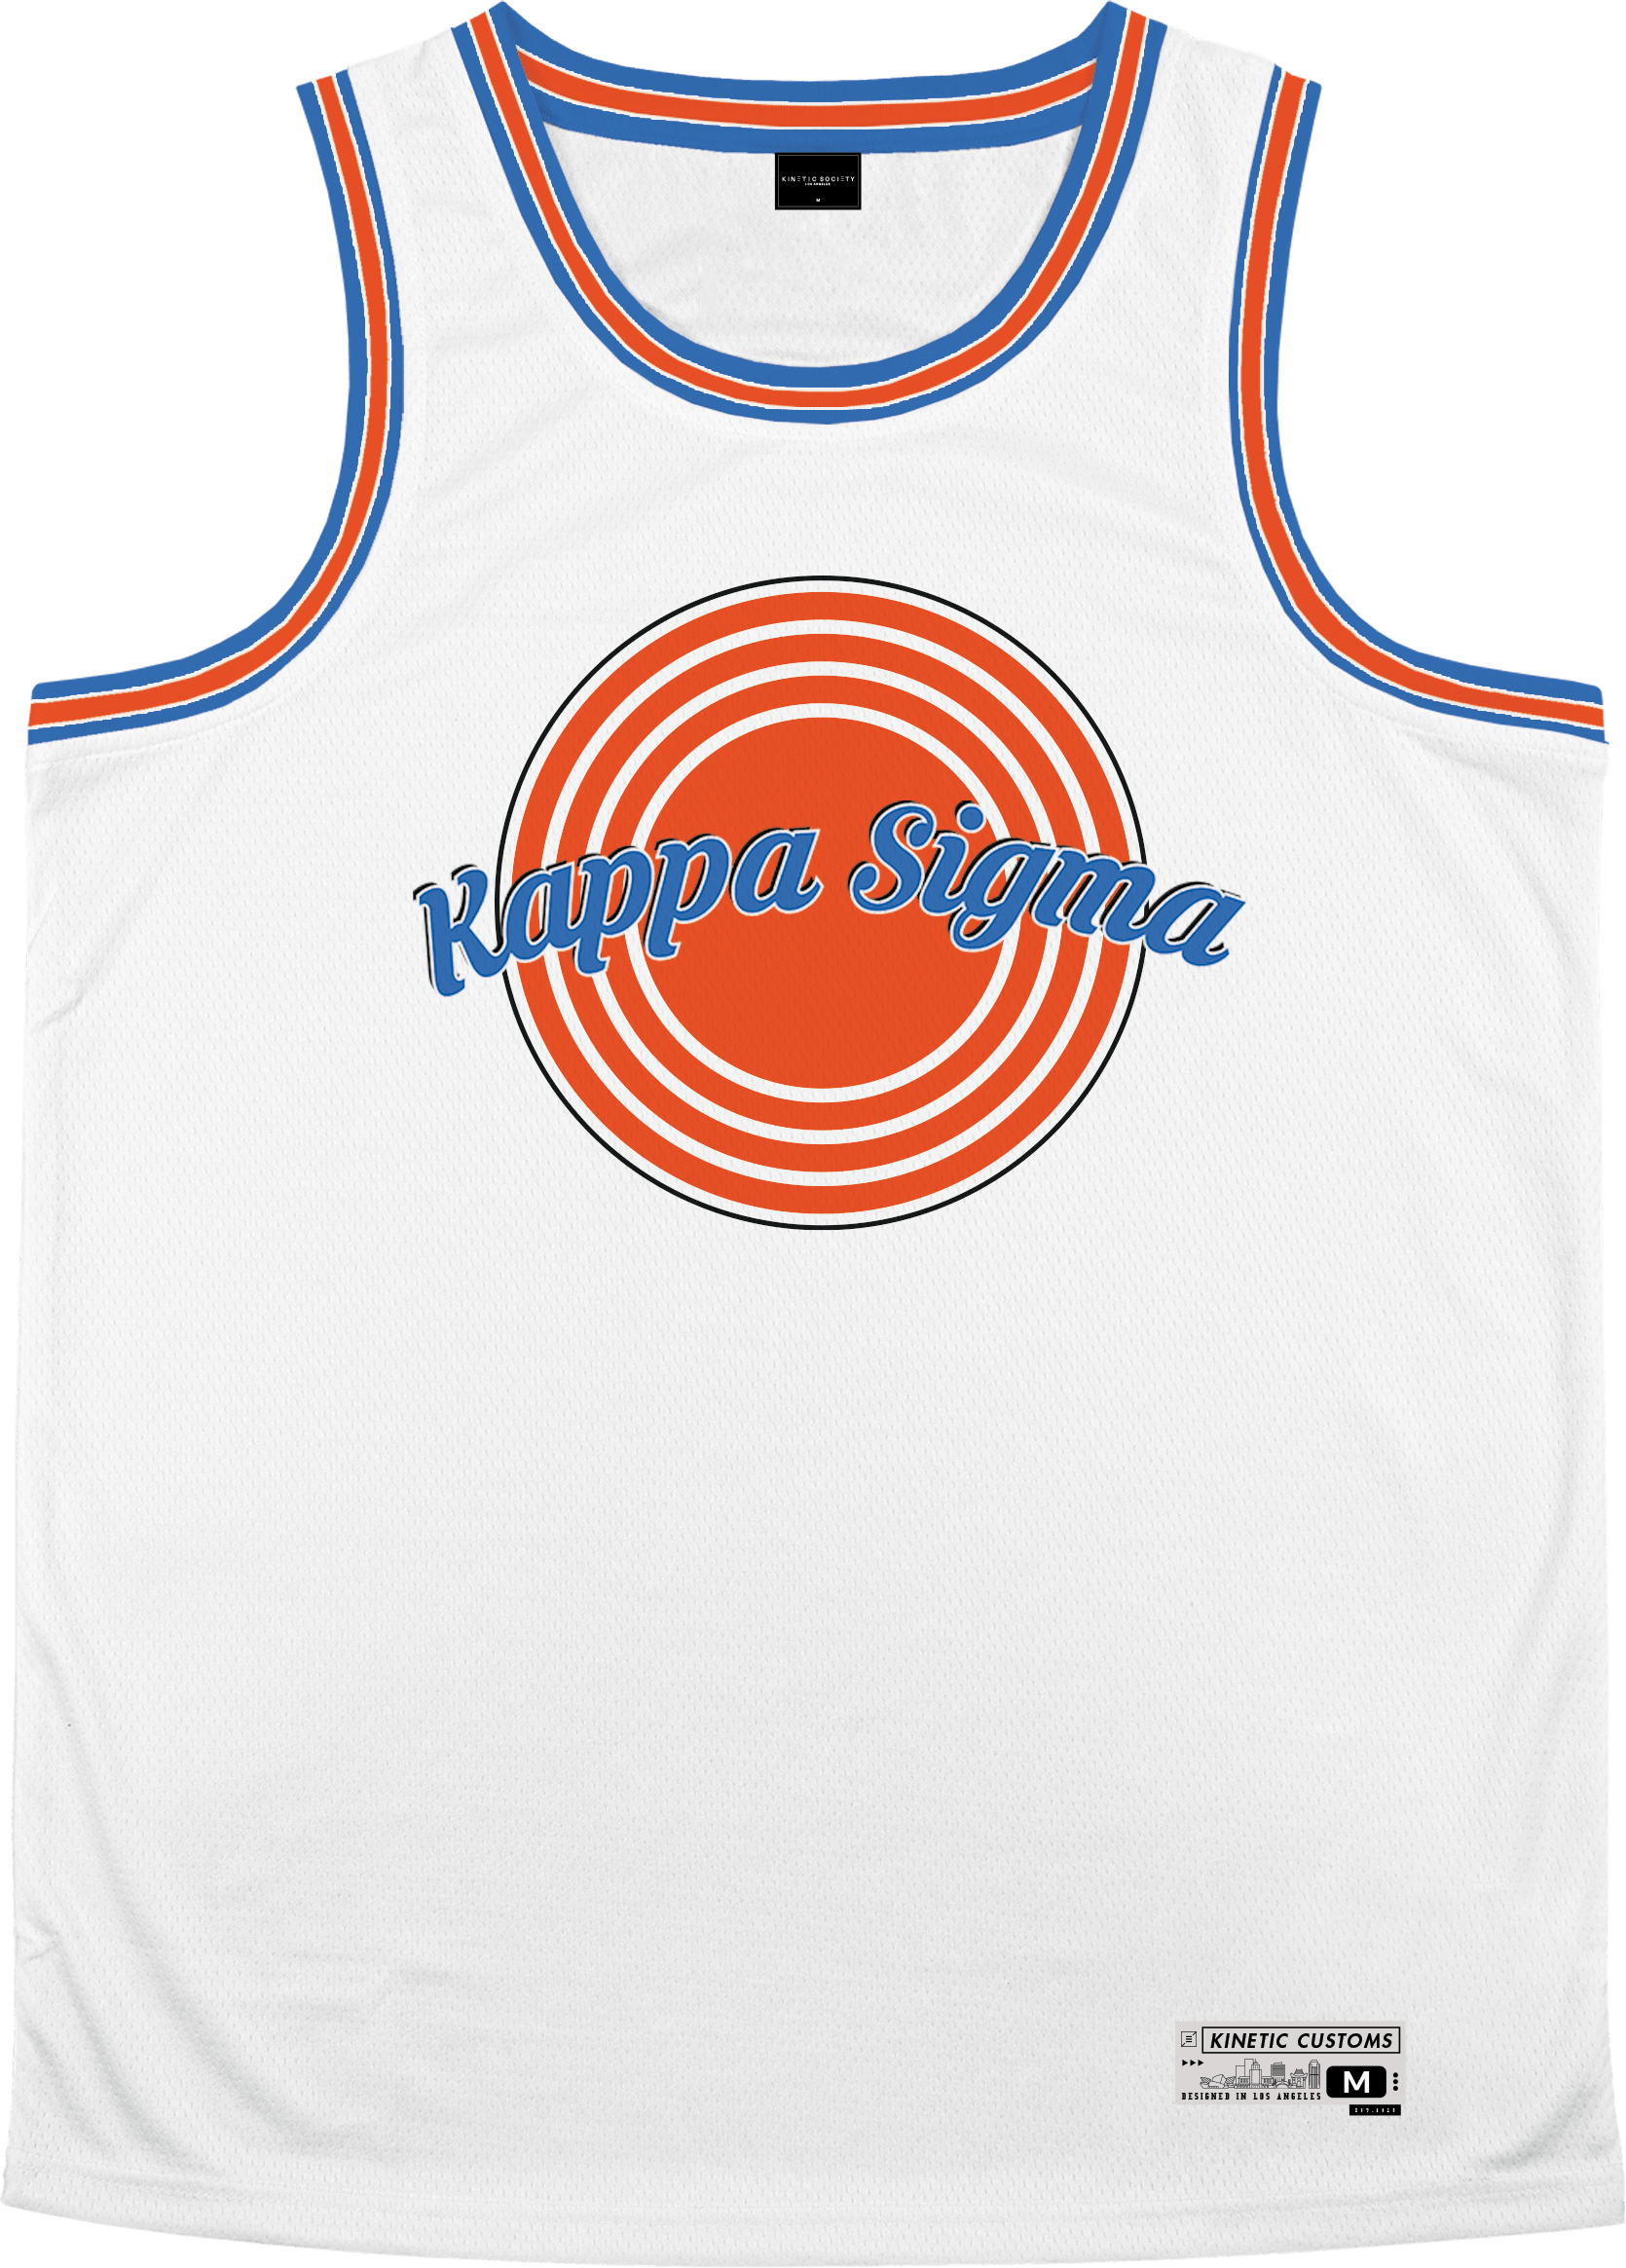 Kappa Sigma - Vintage Basketball Jersey - Kinetic Society